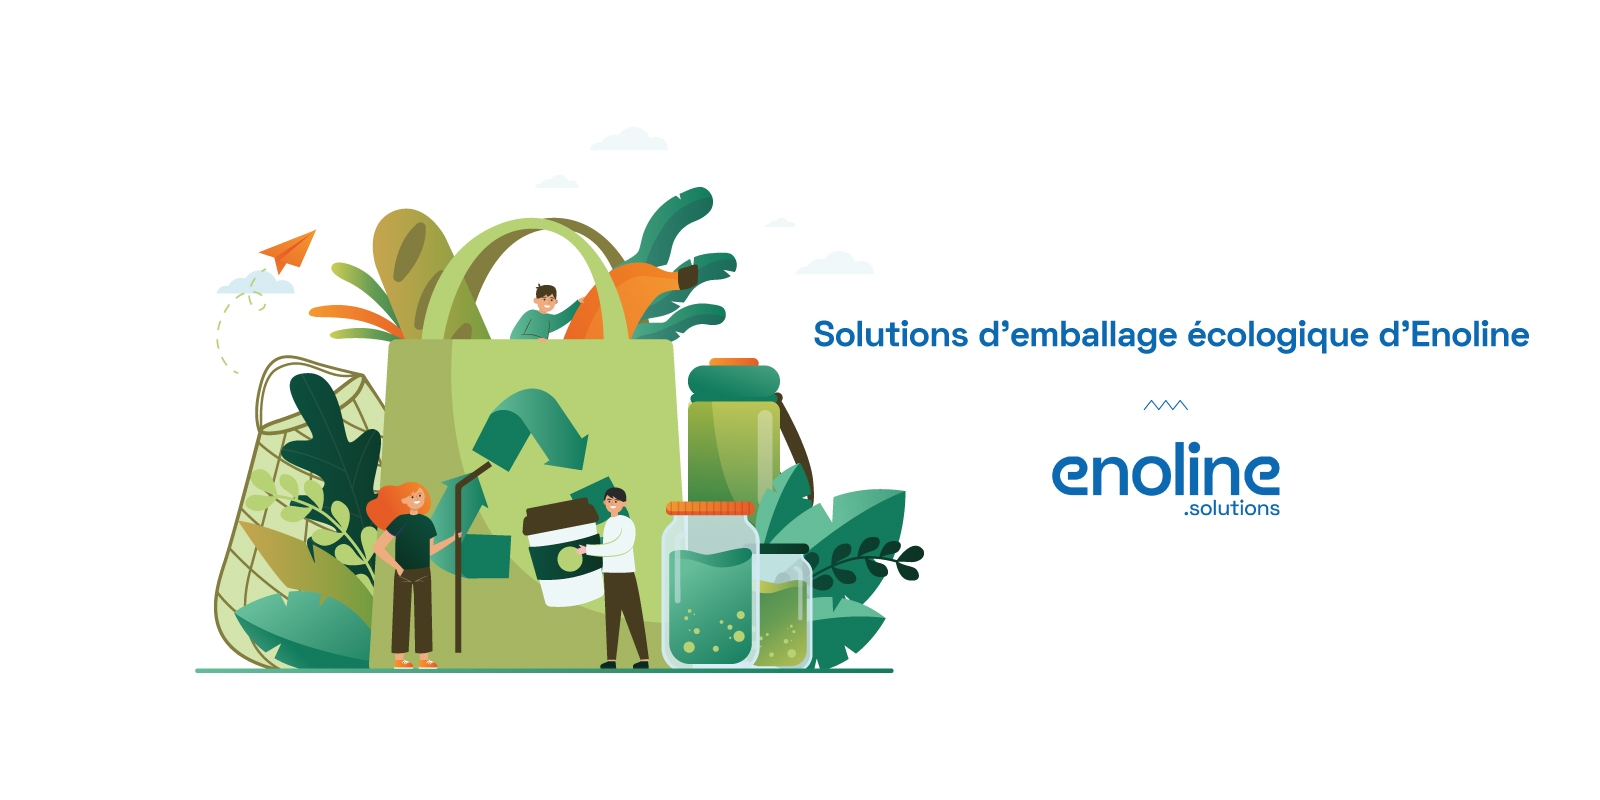 Solutions demballage écologique d Enoline